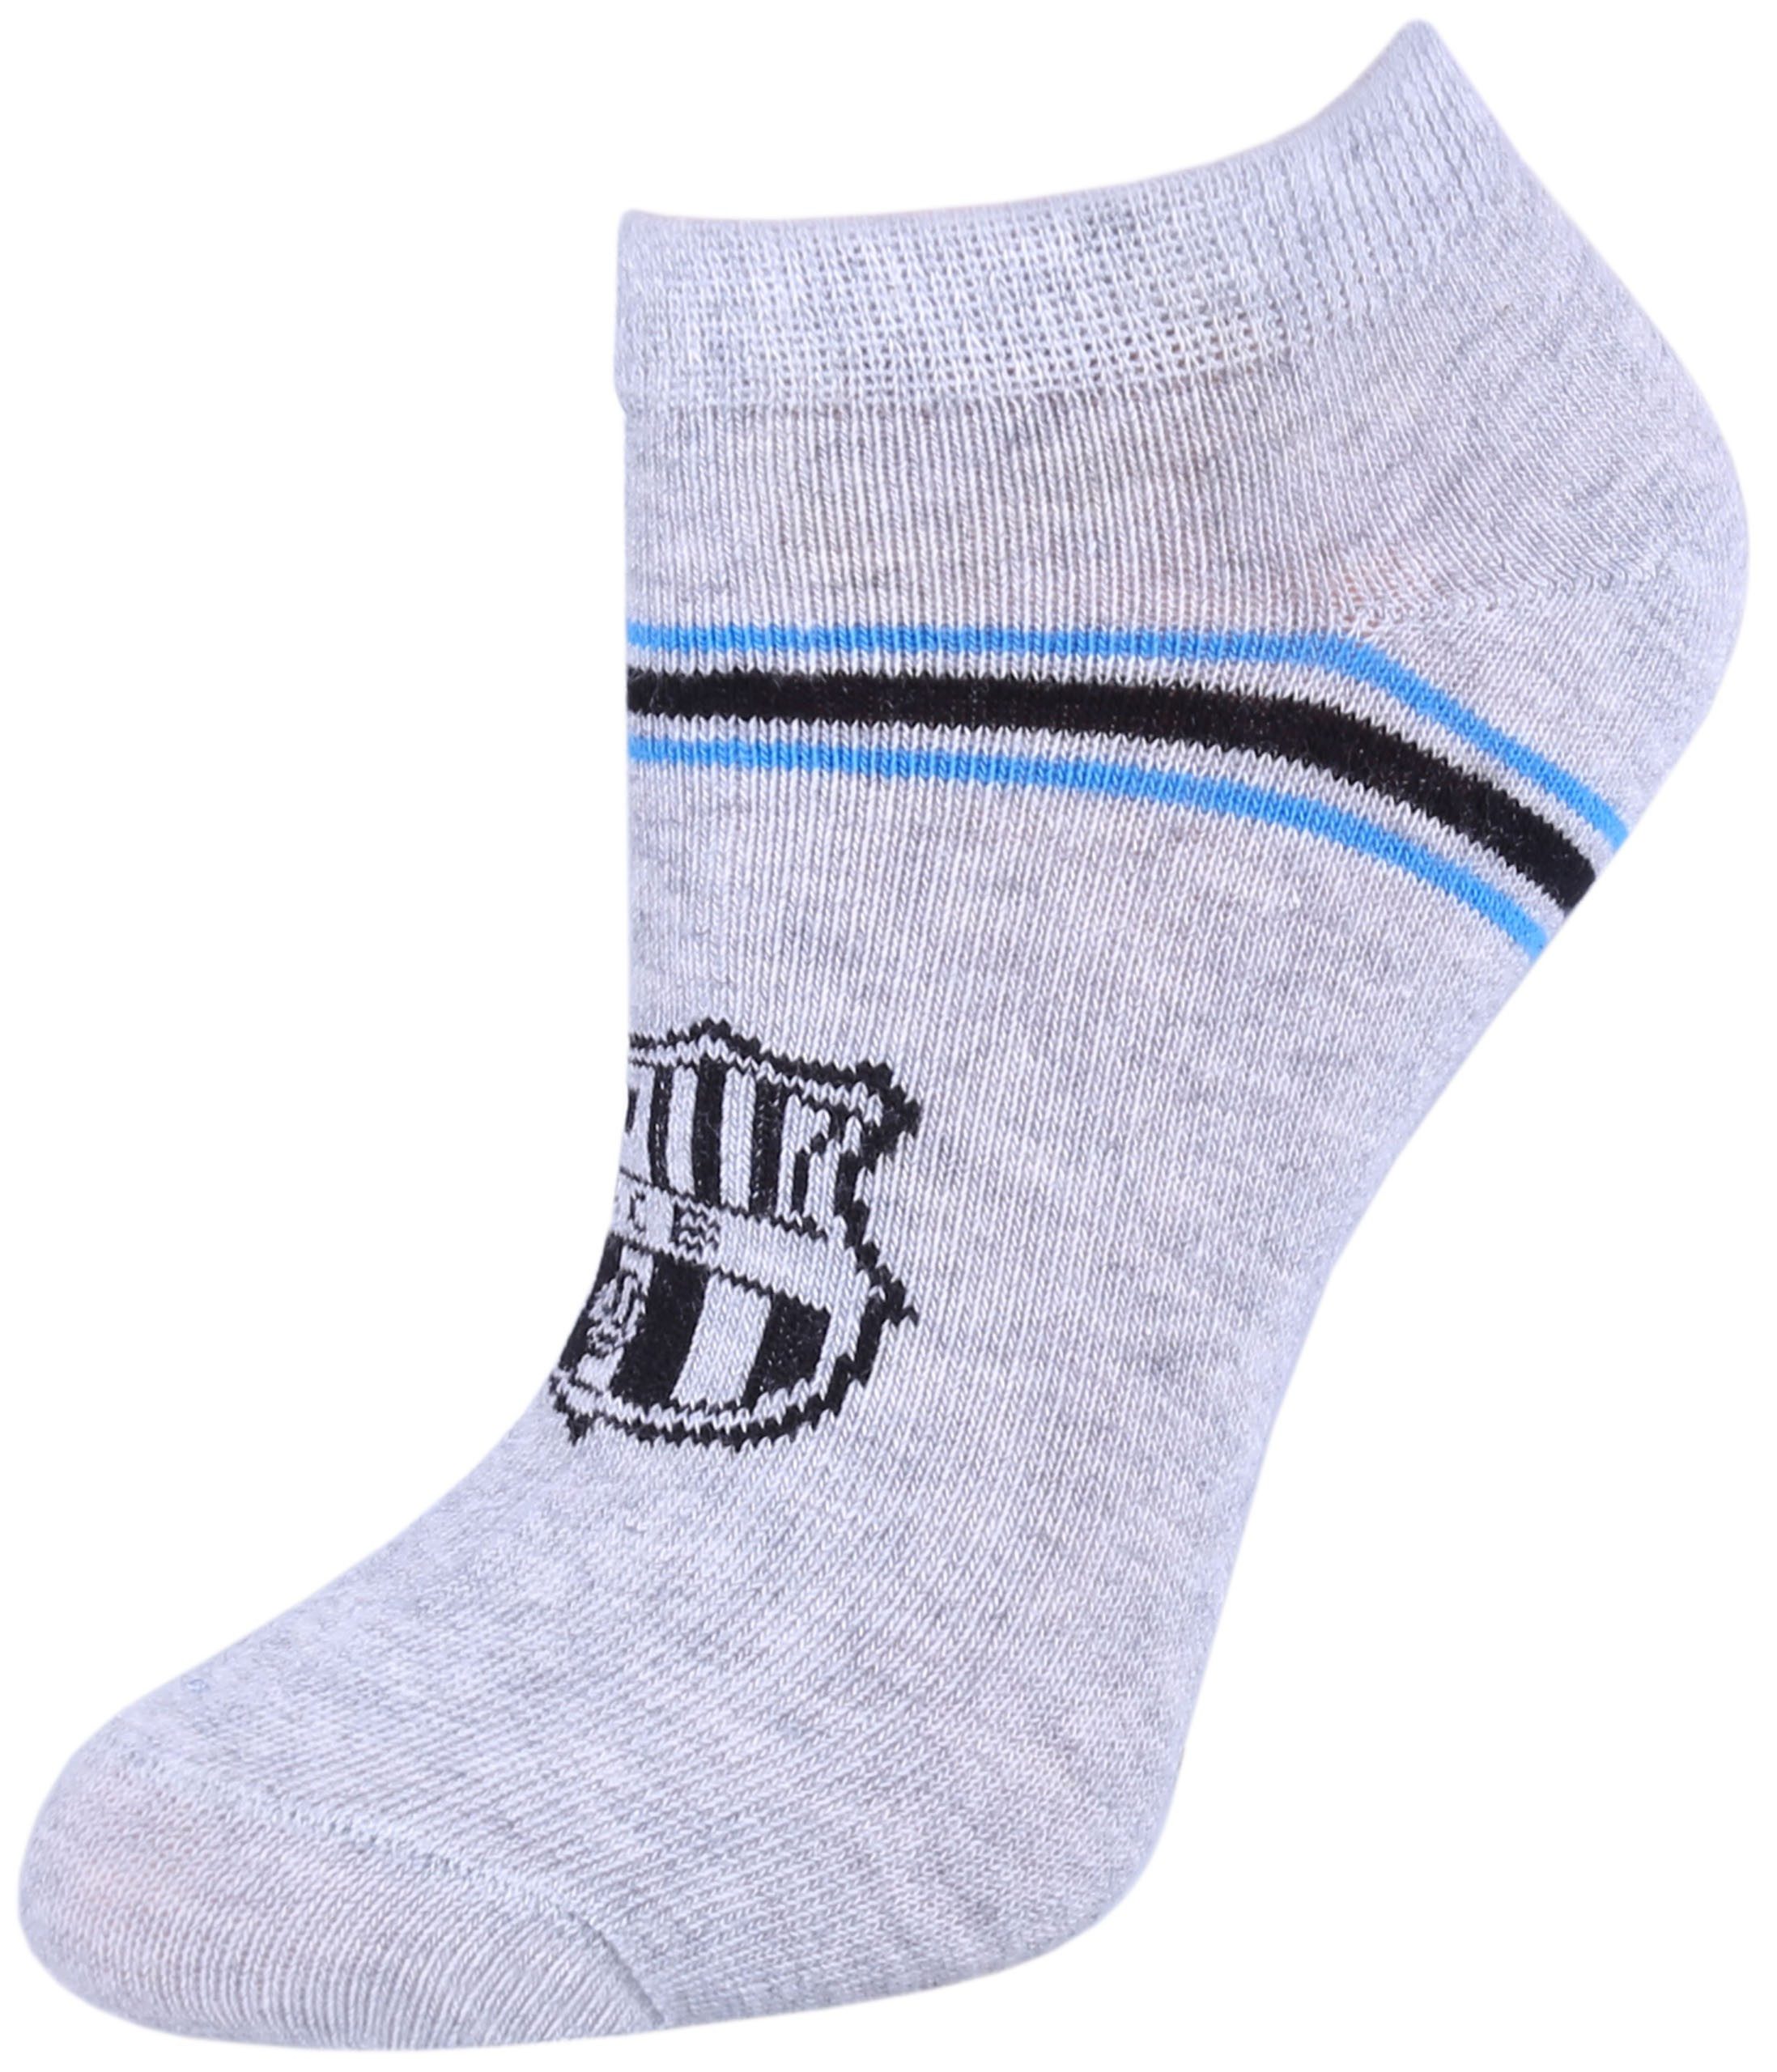 Sarcia.eu Haussocken Graue Socken/Fußsocken für Jungen mit Wappen von FC Barcelona 27/30 EU